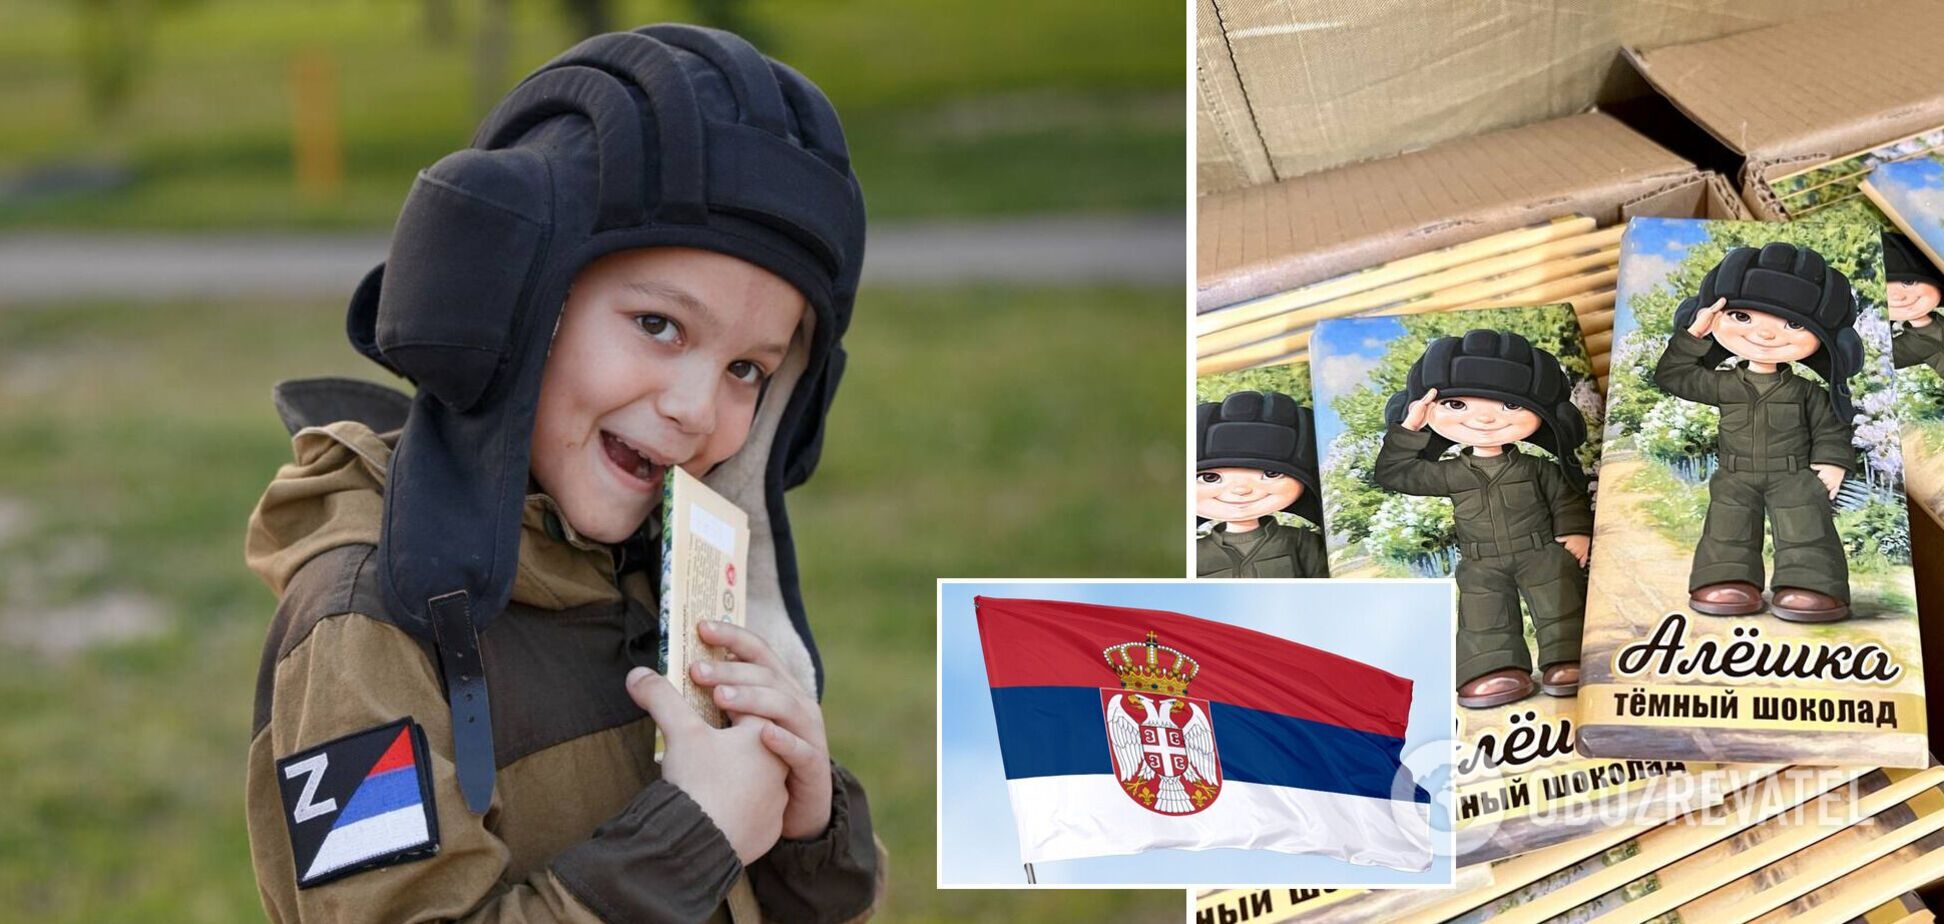 Флаг Сербии и символ Z. В России опозорились рекламой шоколада 'Алешка' с мальчиком в военной форме